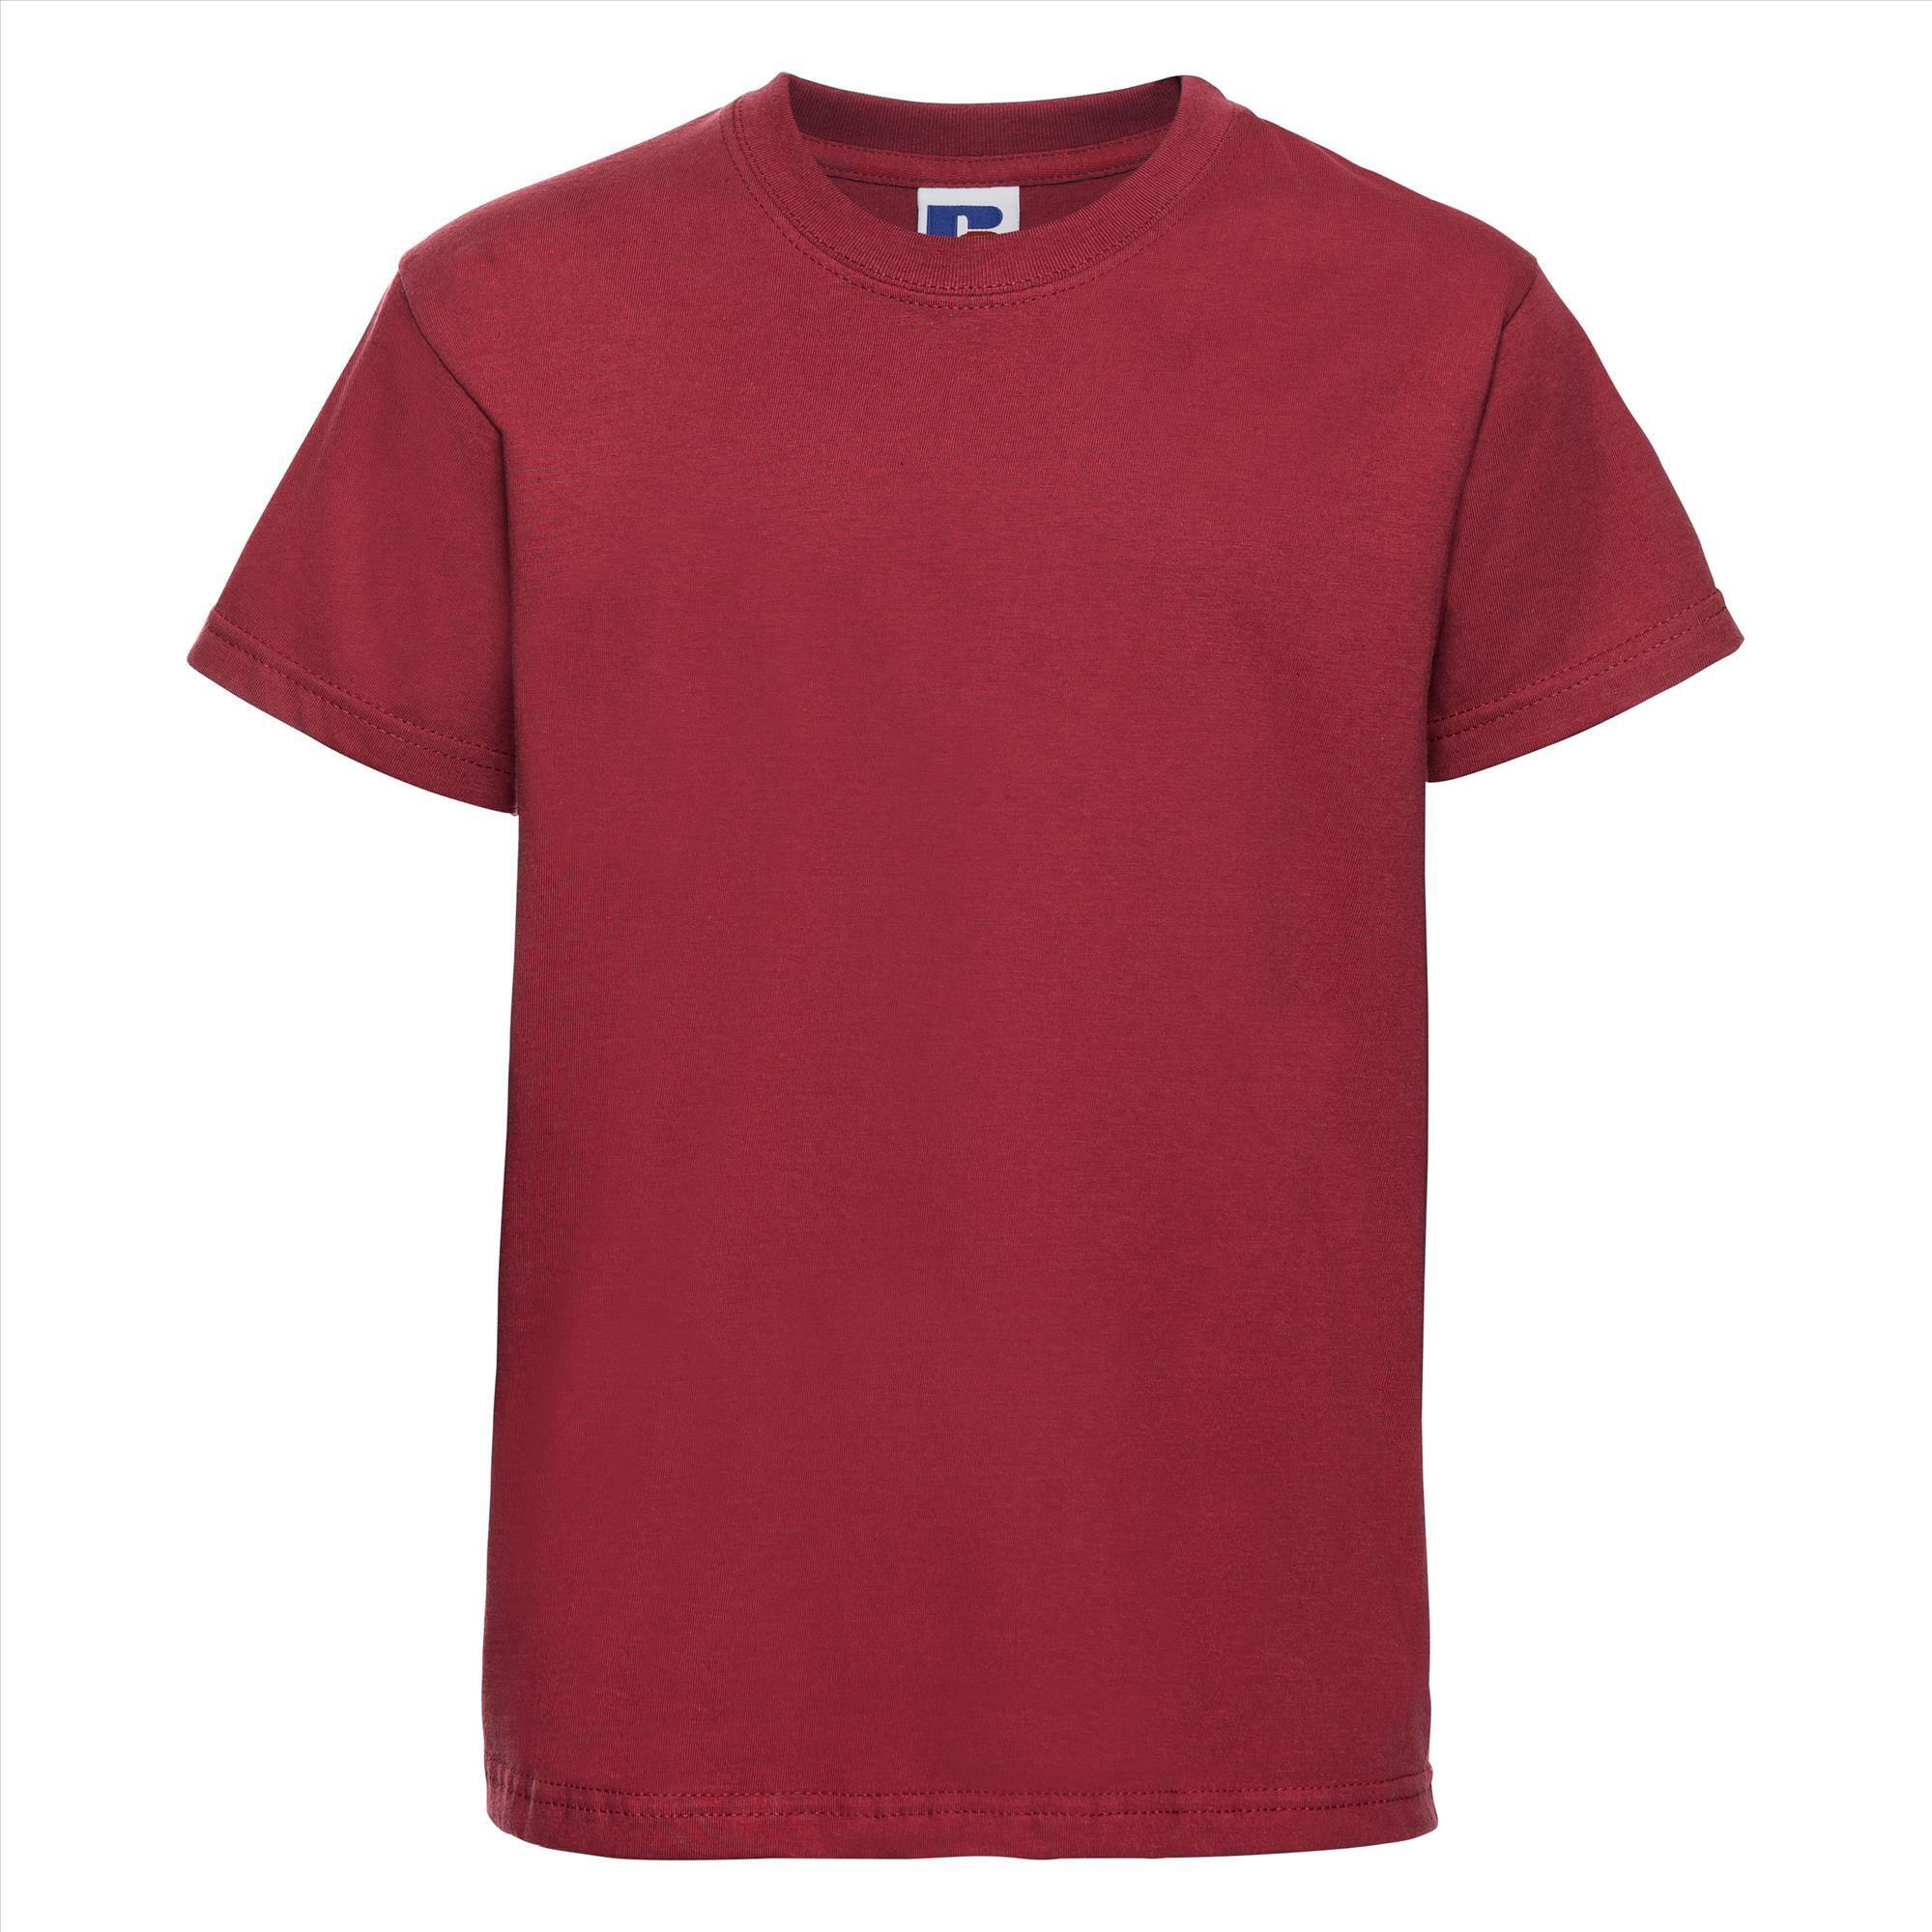 Kinder t-shirt rood te personaliseren bedrukbaar